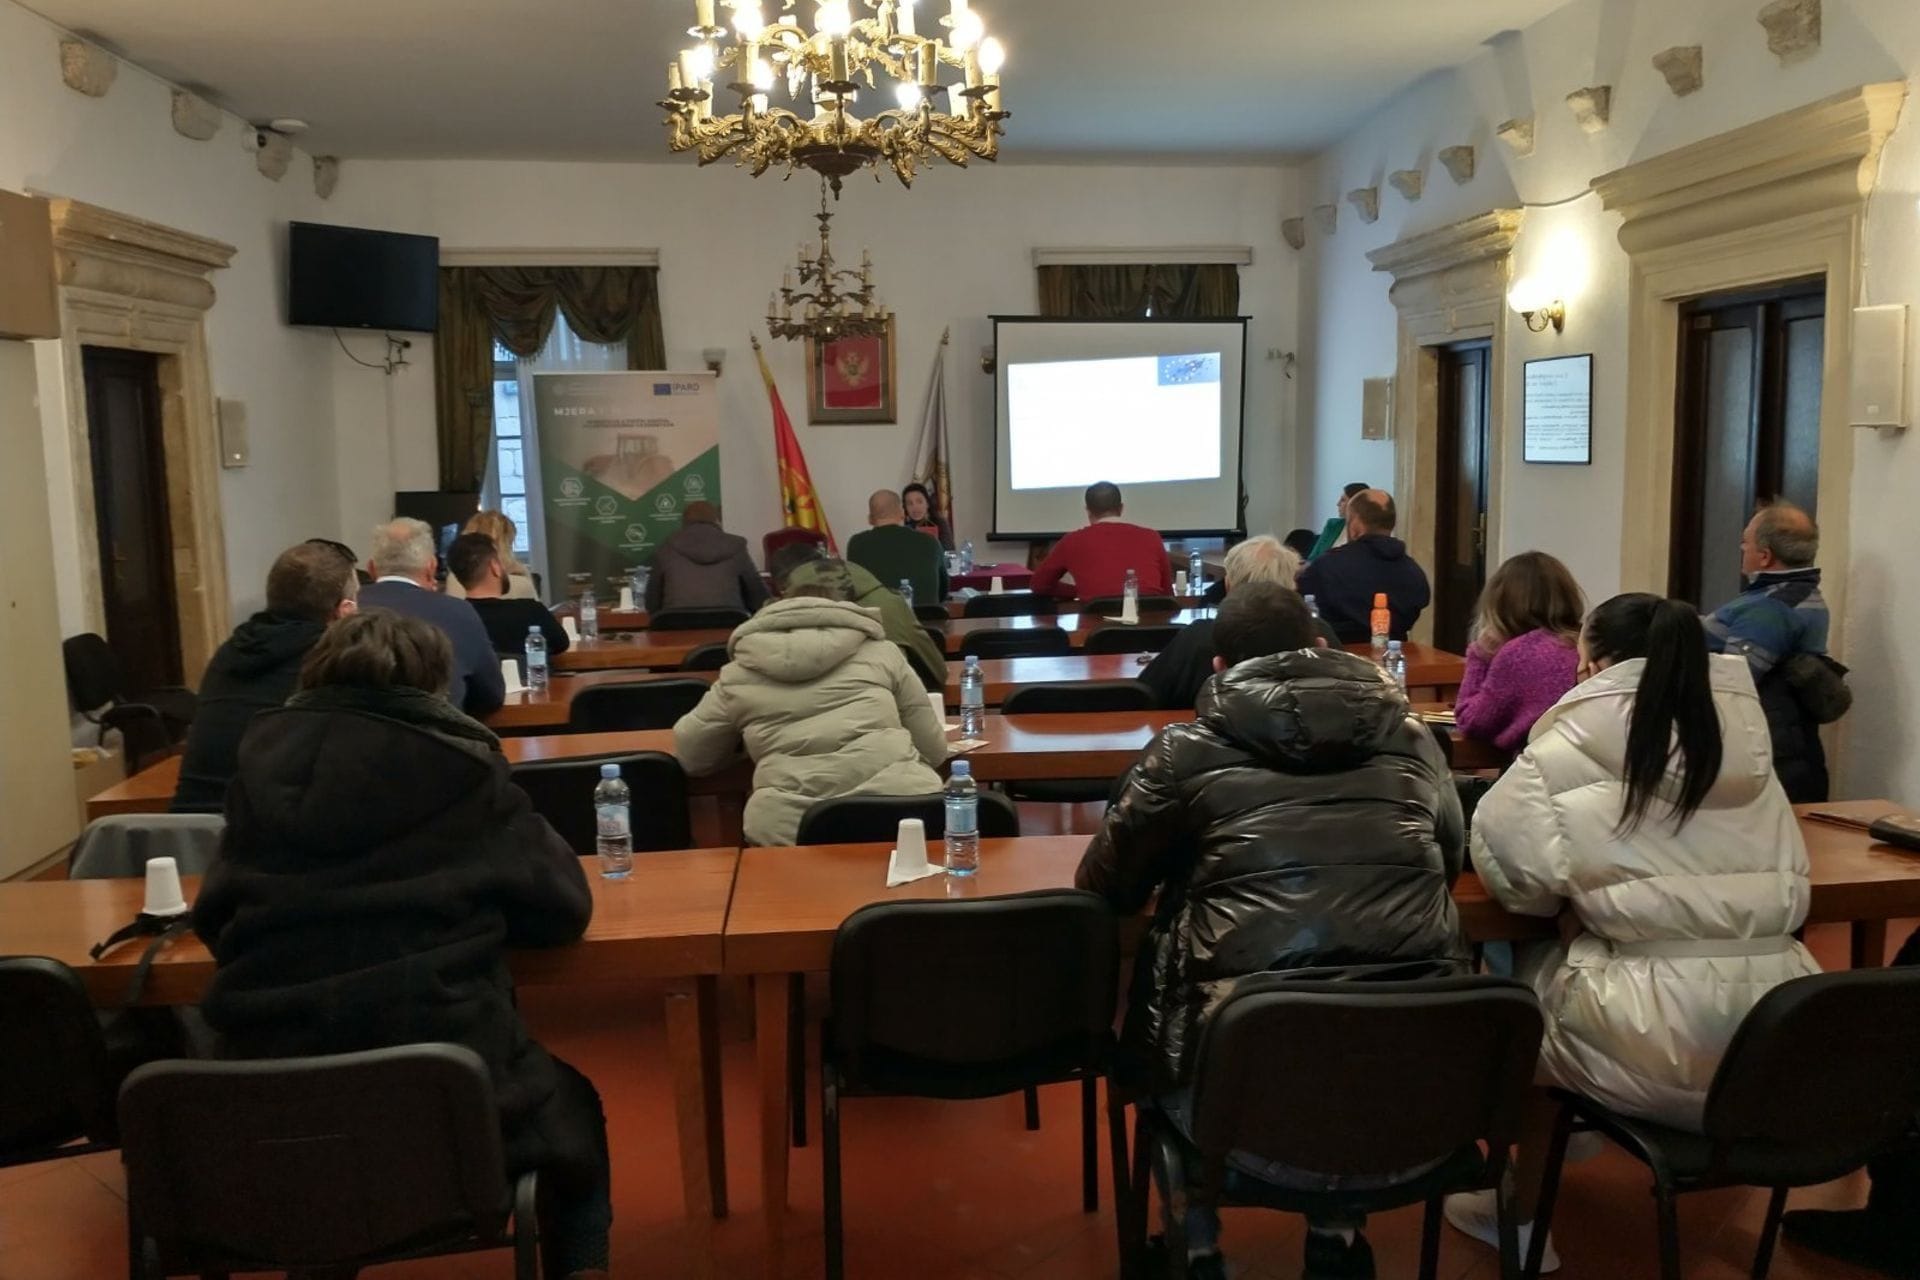 U nastavku info-kampanje o IV IPARD Javnom pozivu za Mjeru 1, održane prezentacije u crnogorskim opštinama: Herceg Novi, Kotor, Kolašin i Mojkovac